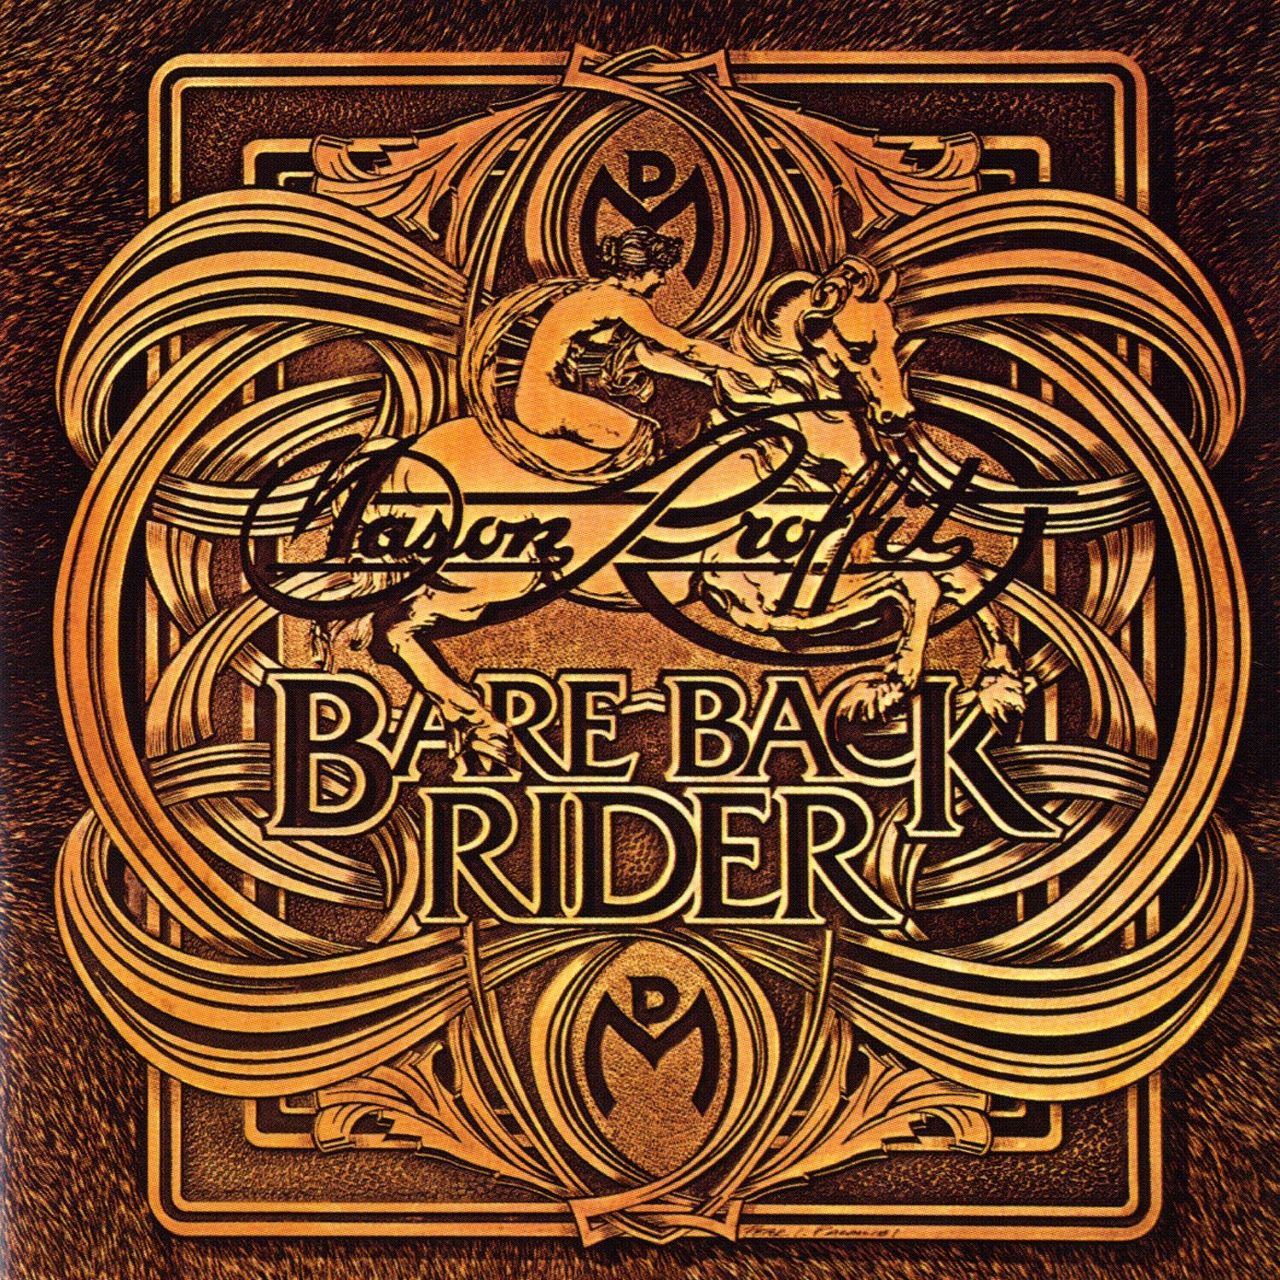 Mason Proffit – Bare Back Rider cover album